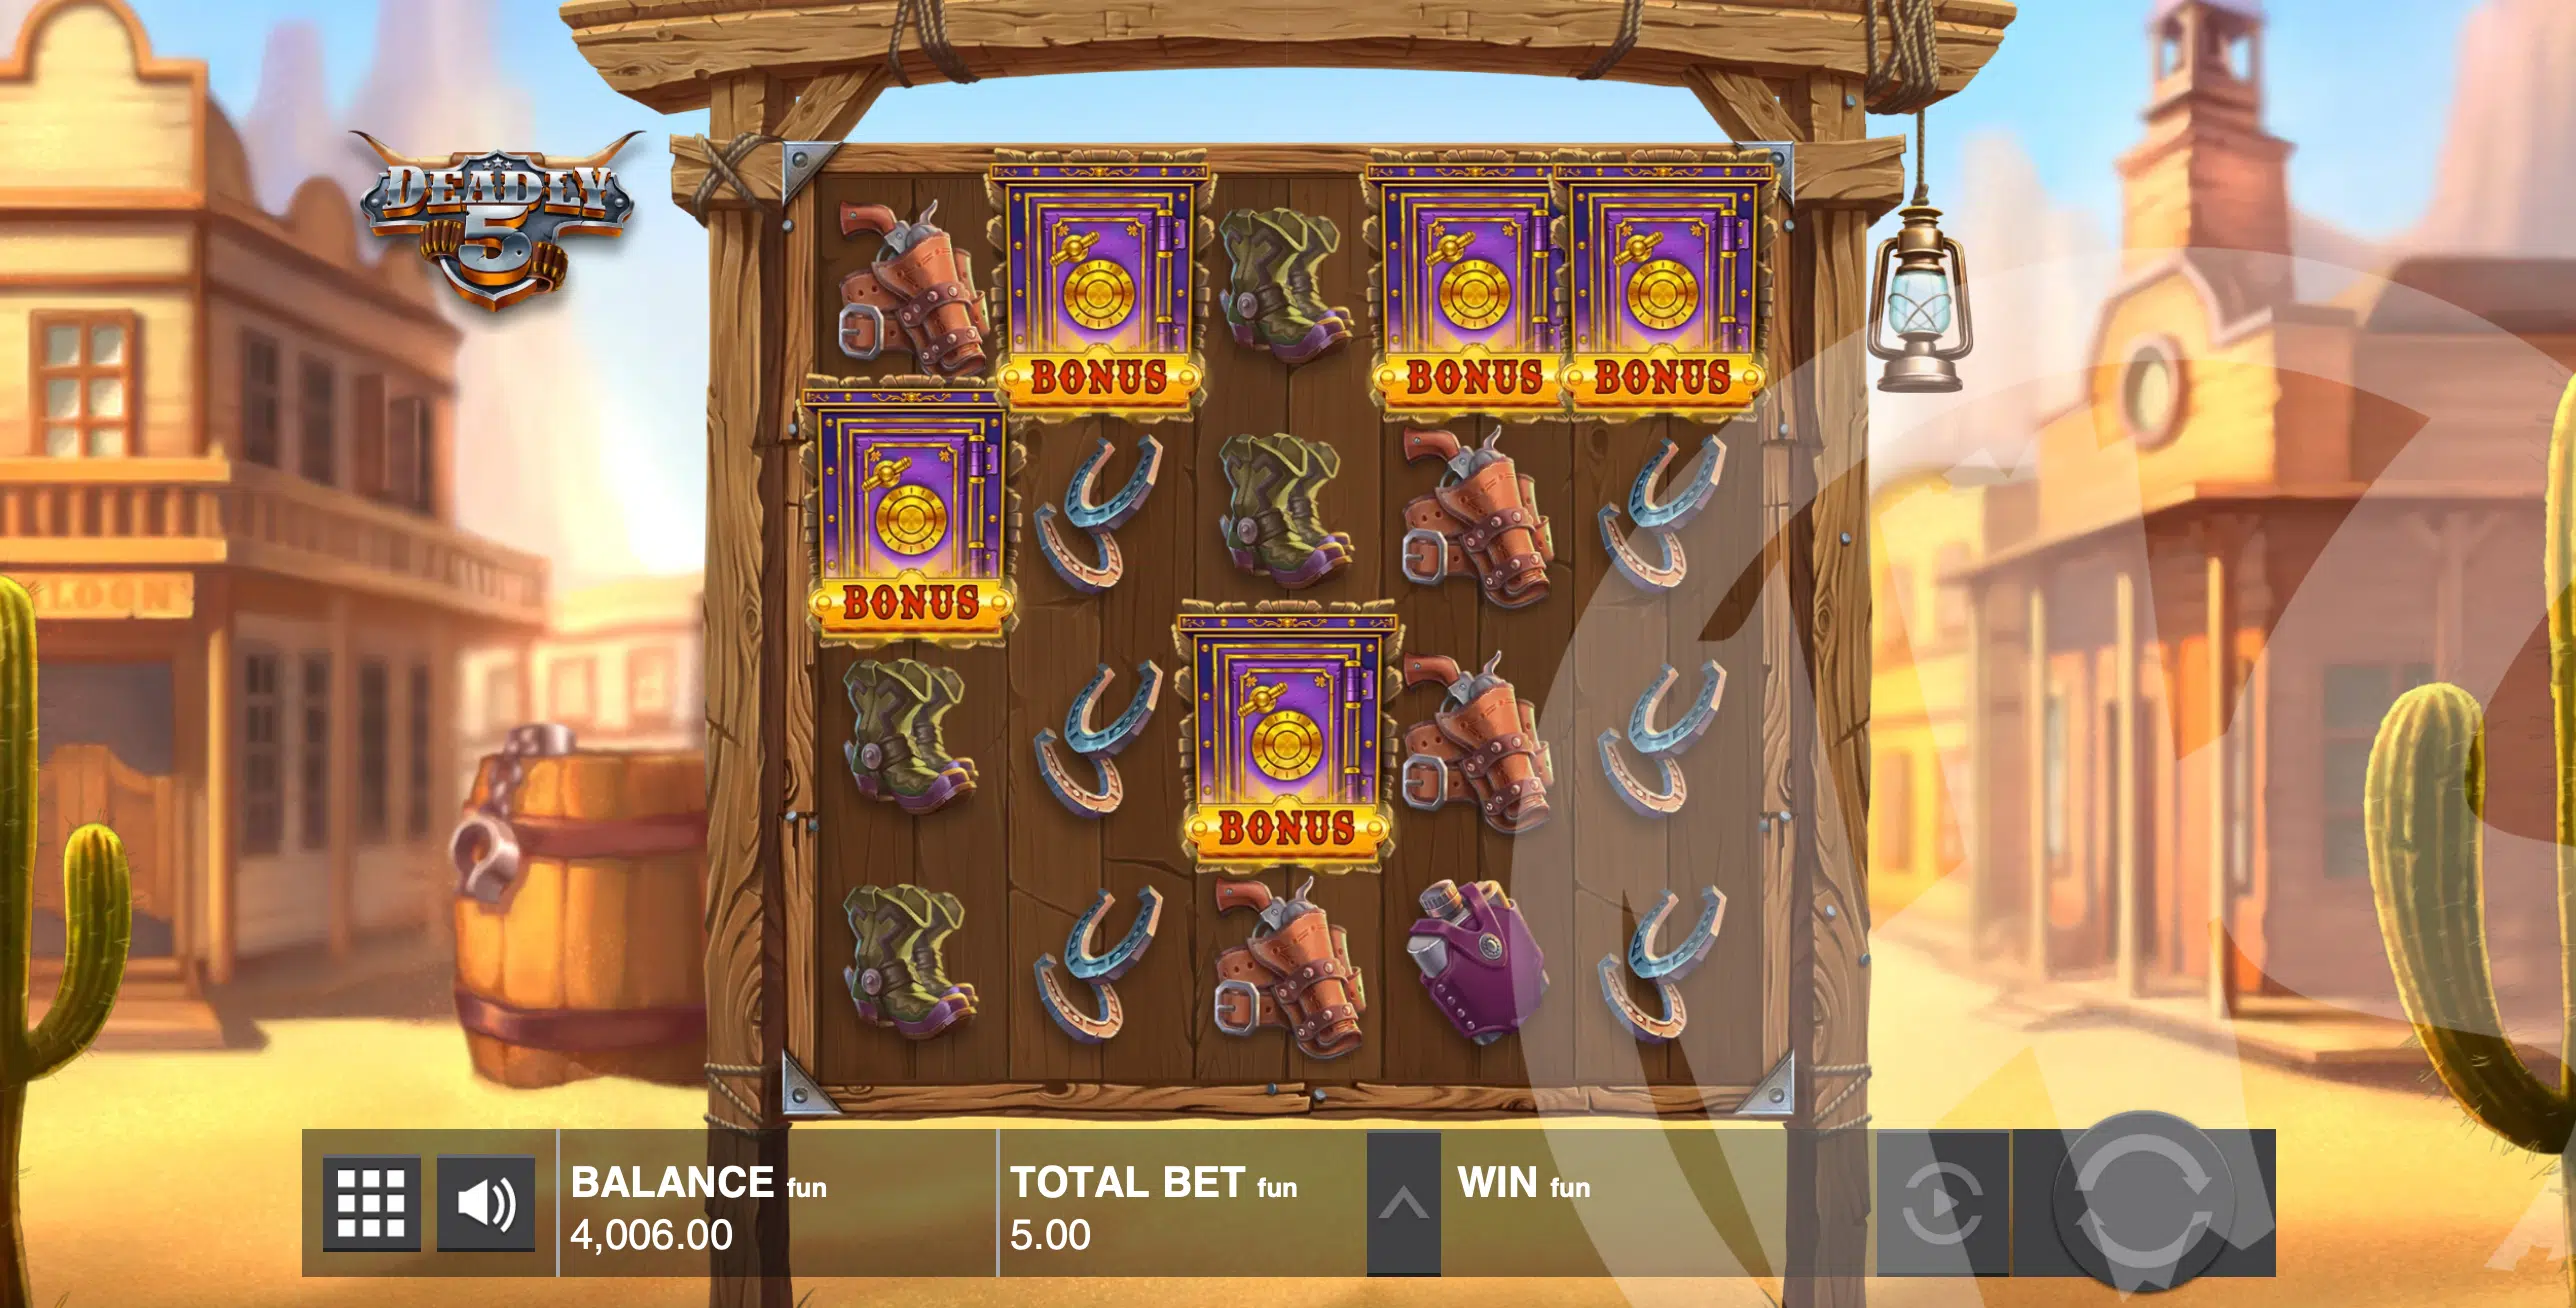 3 or More Bonus Symbols Trigger the Sheriff's Bonus Feature